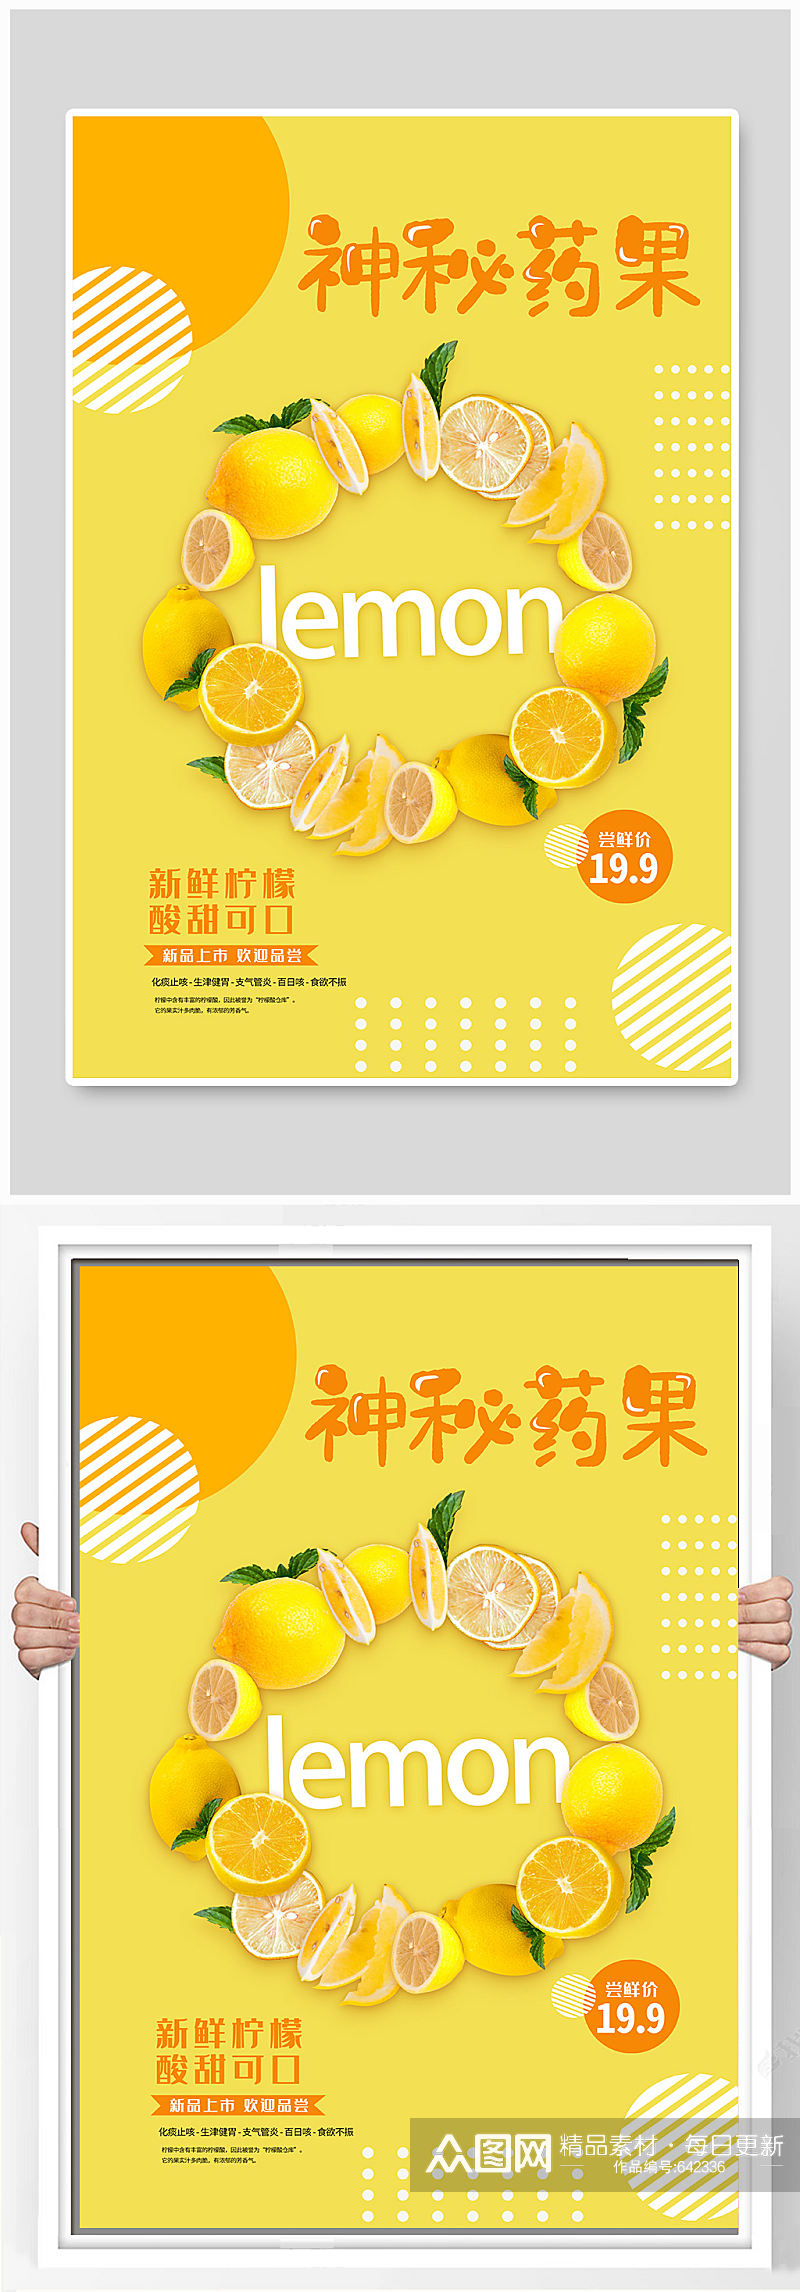 新鲜柠檬促销海报素材